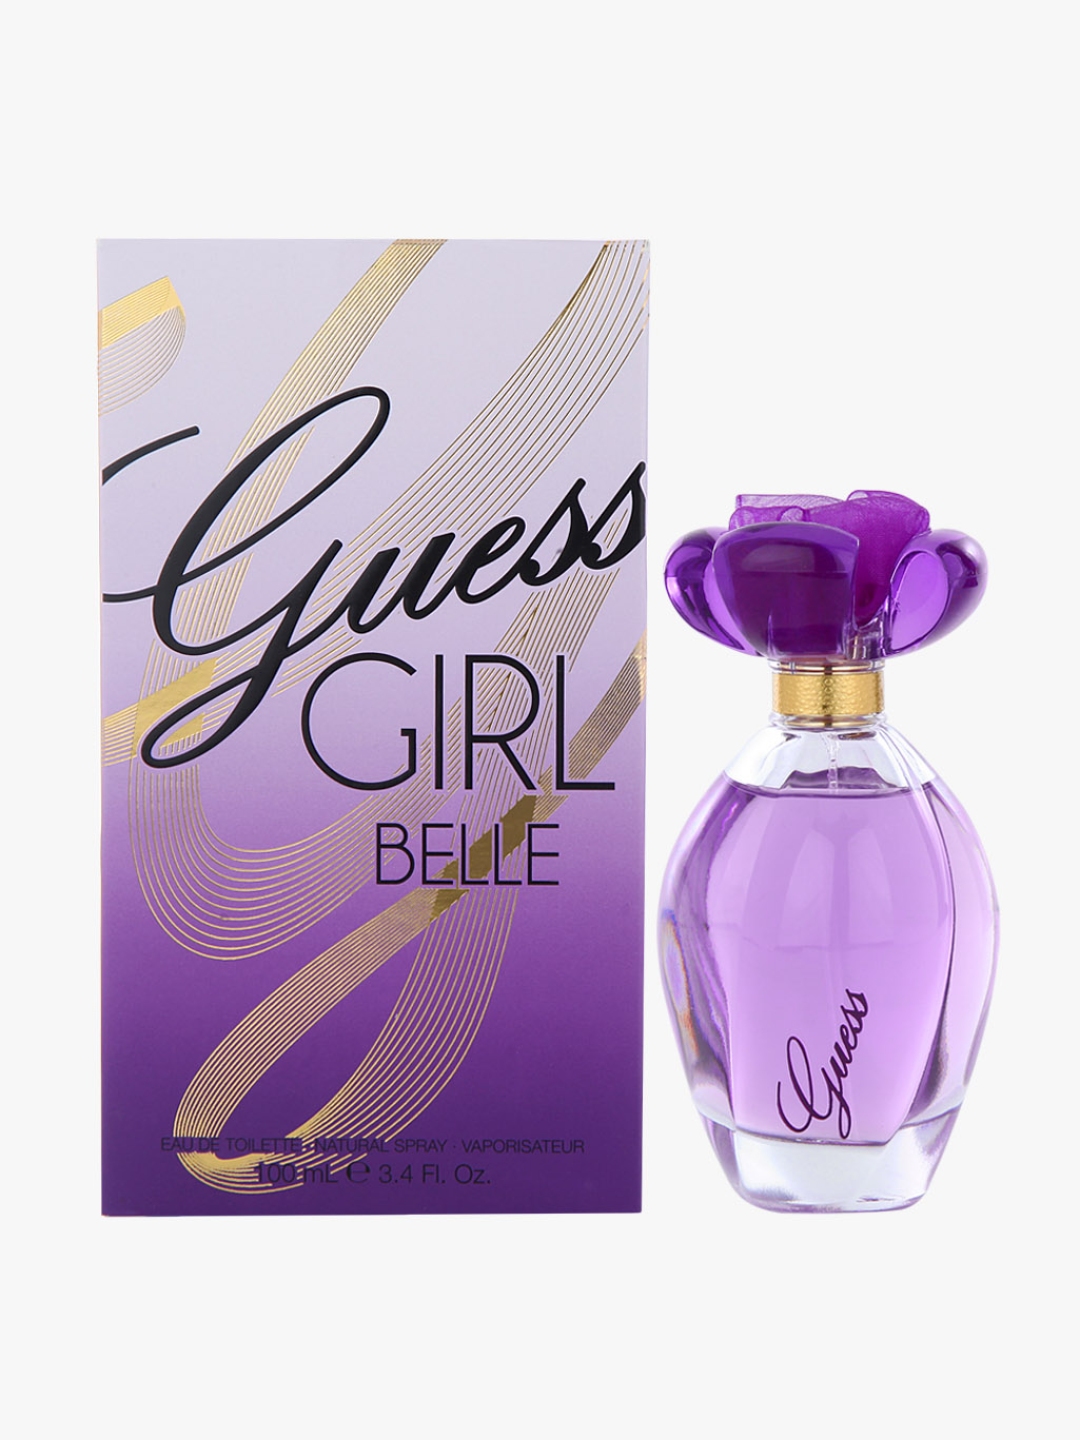 Buy Guess Girl Belle Eau De Toilette 100 Ml Perfume For Women 10002193 Myntra